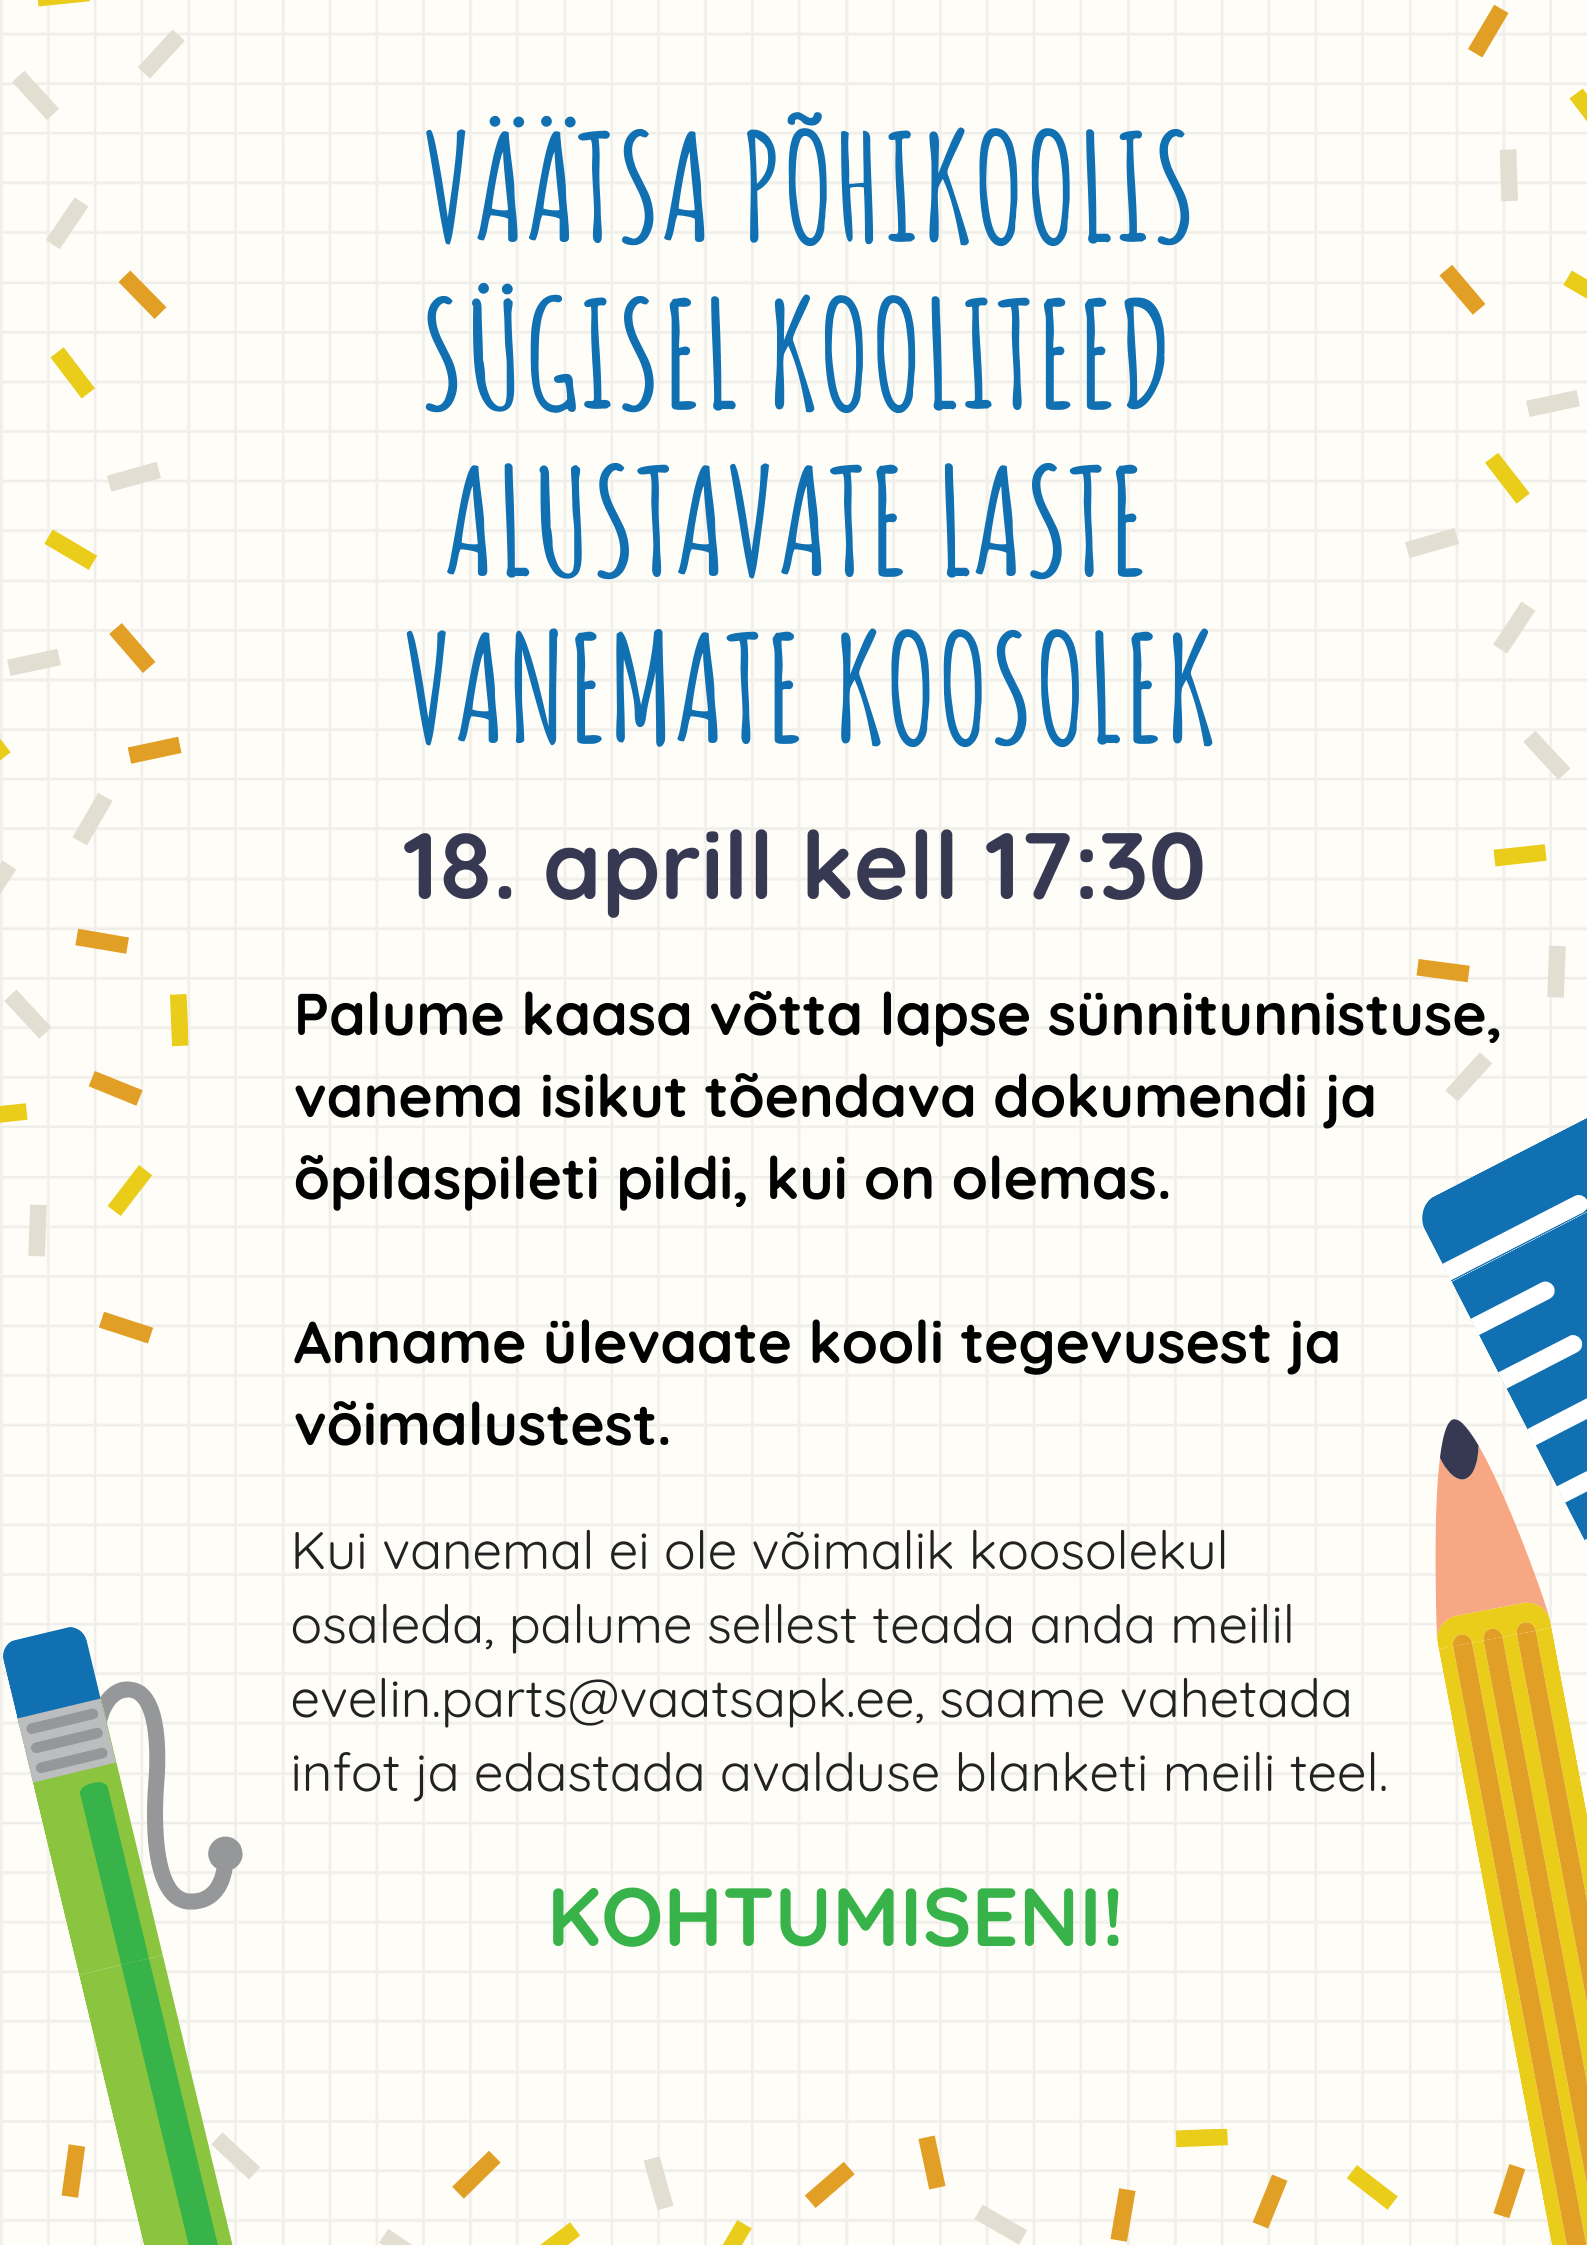 Väätsa Põhikoolis sügisel kooliteed  alustavate laste  vanemate koosolek 18.04.2022 kell 17.30